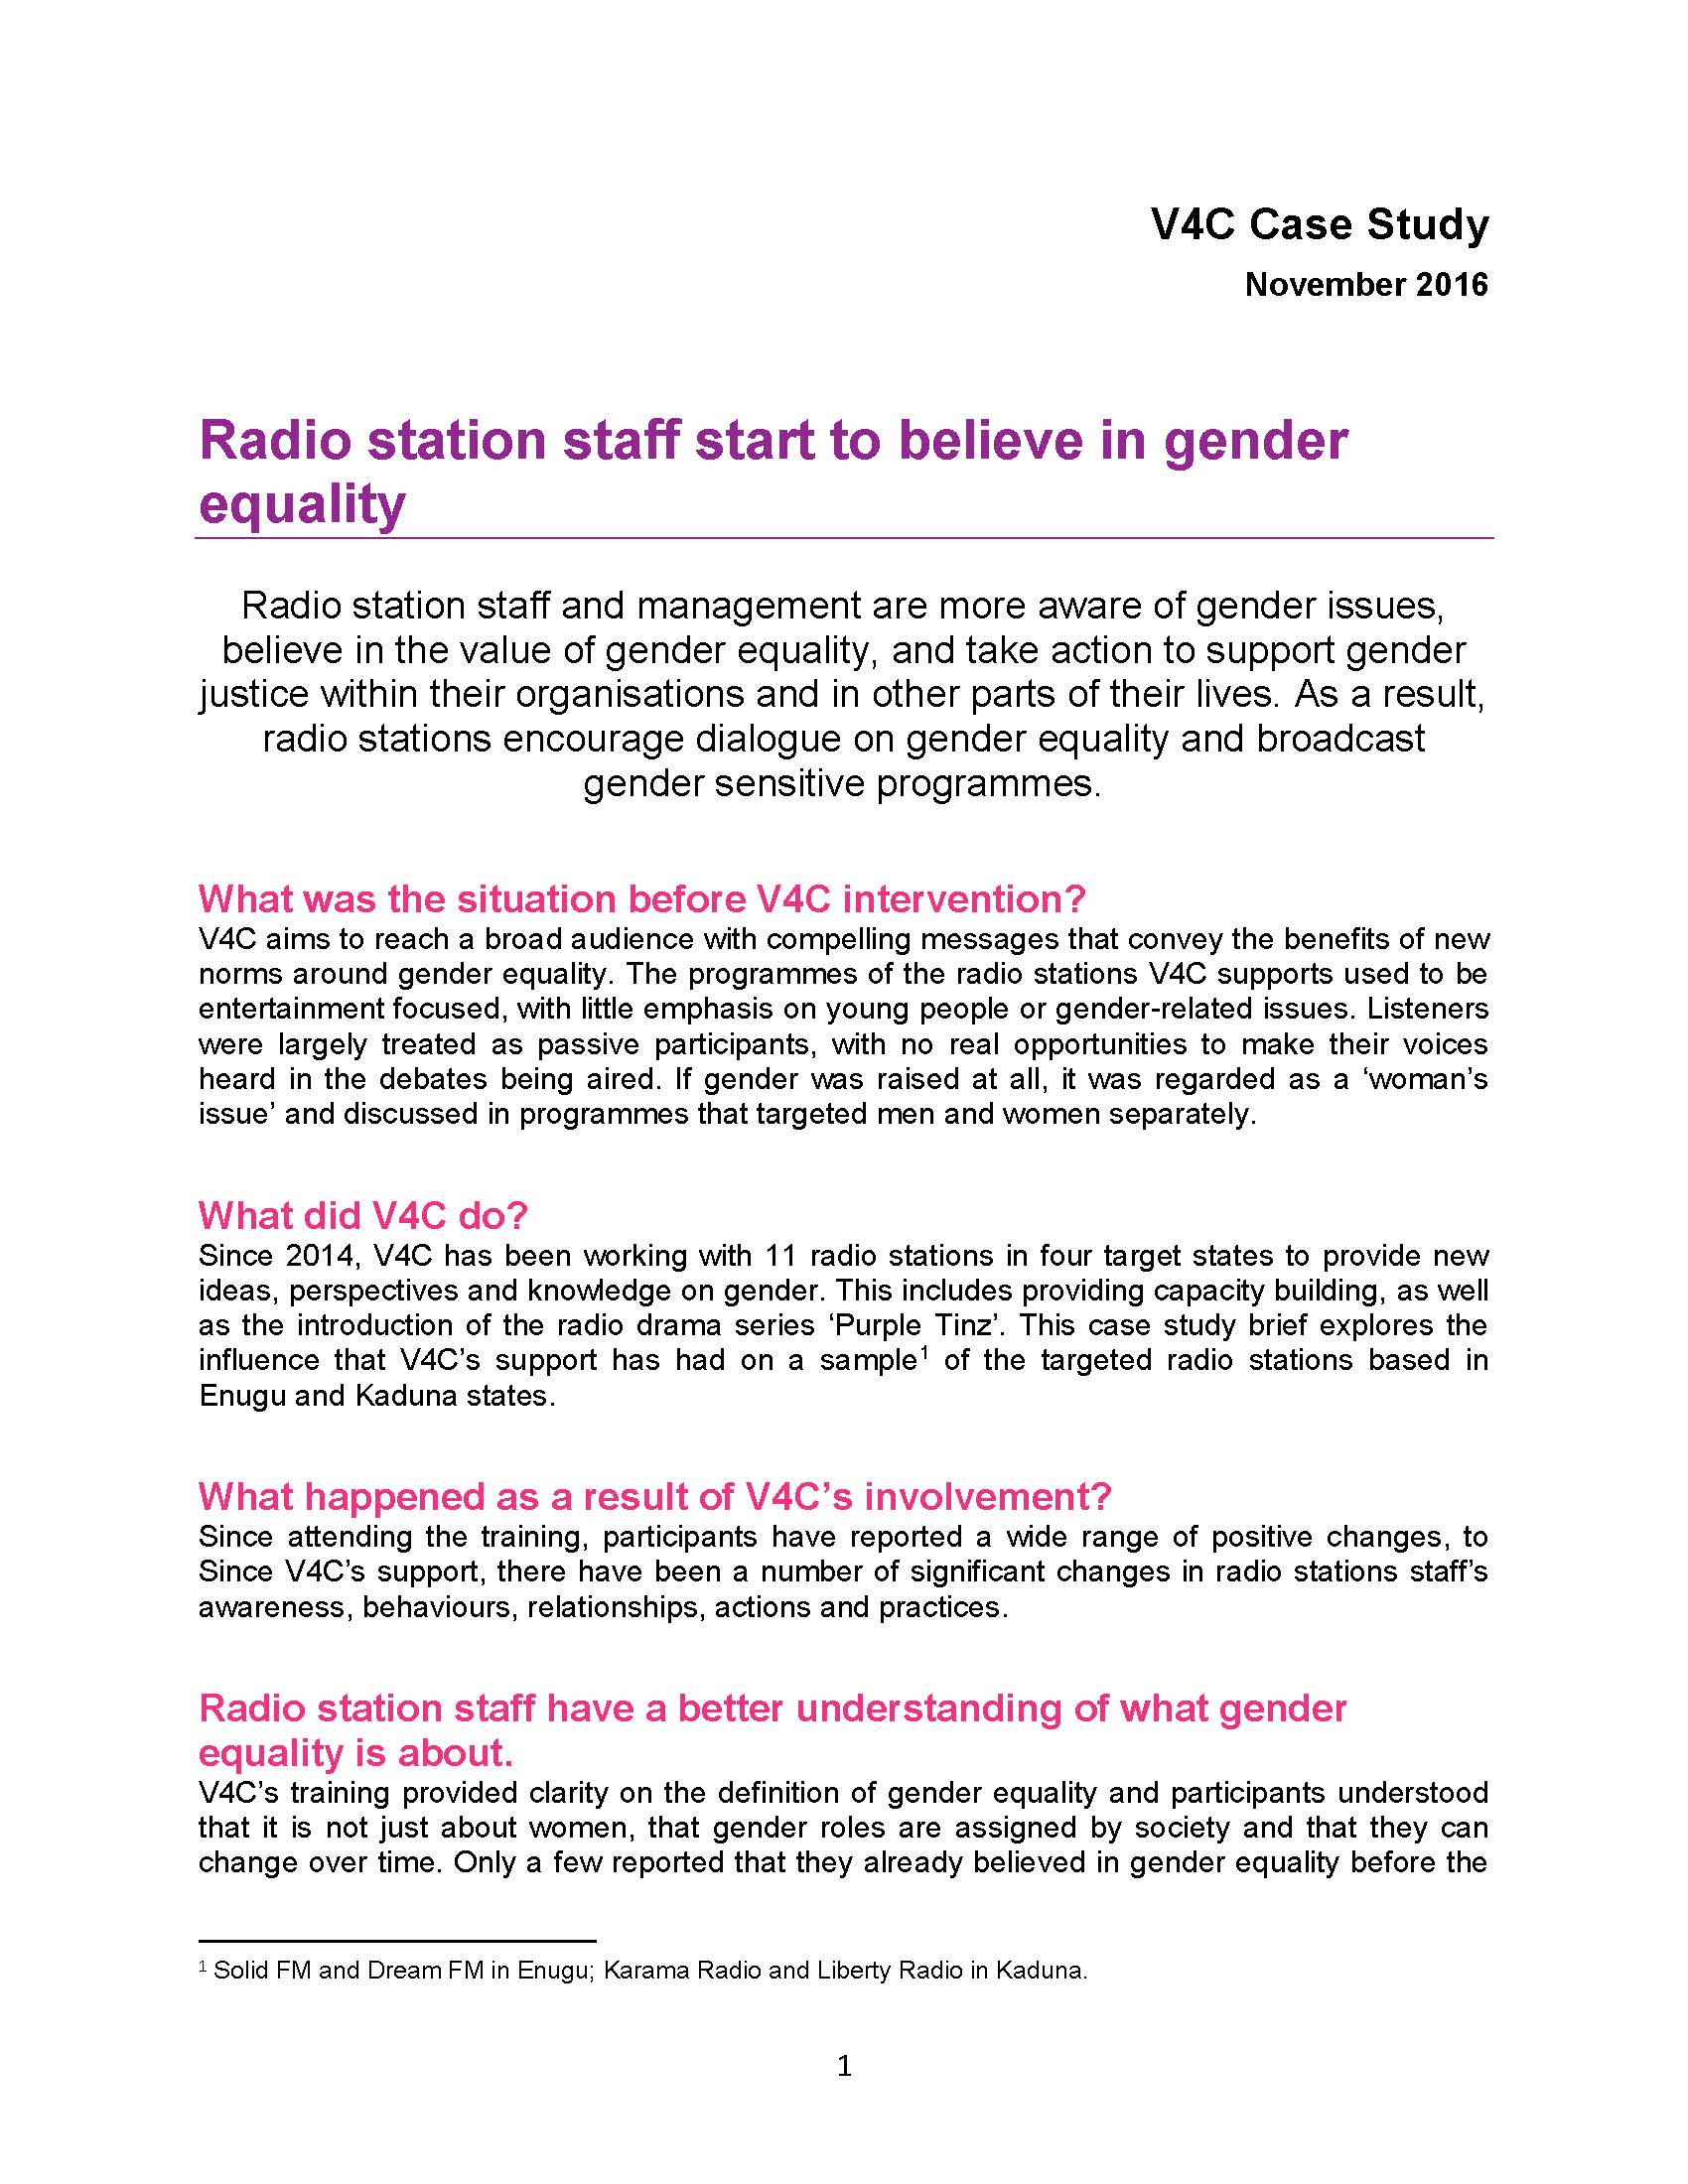 v4c case study - radio station staff start to believe in gender